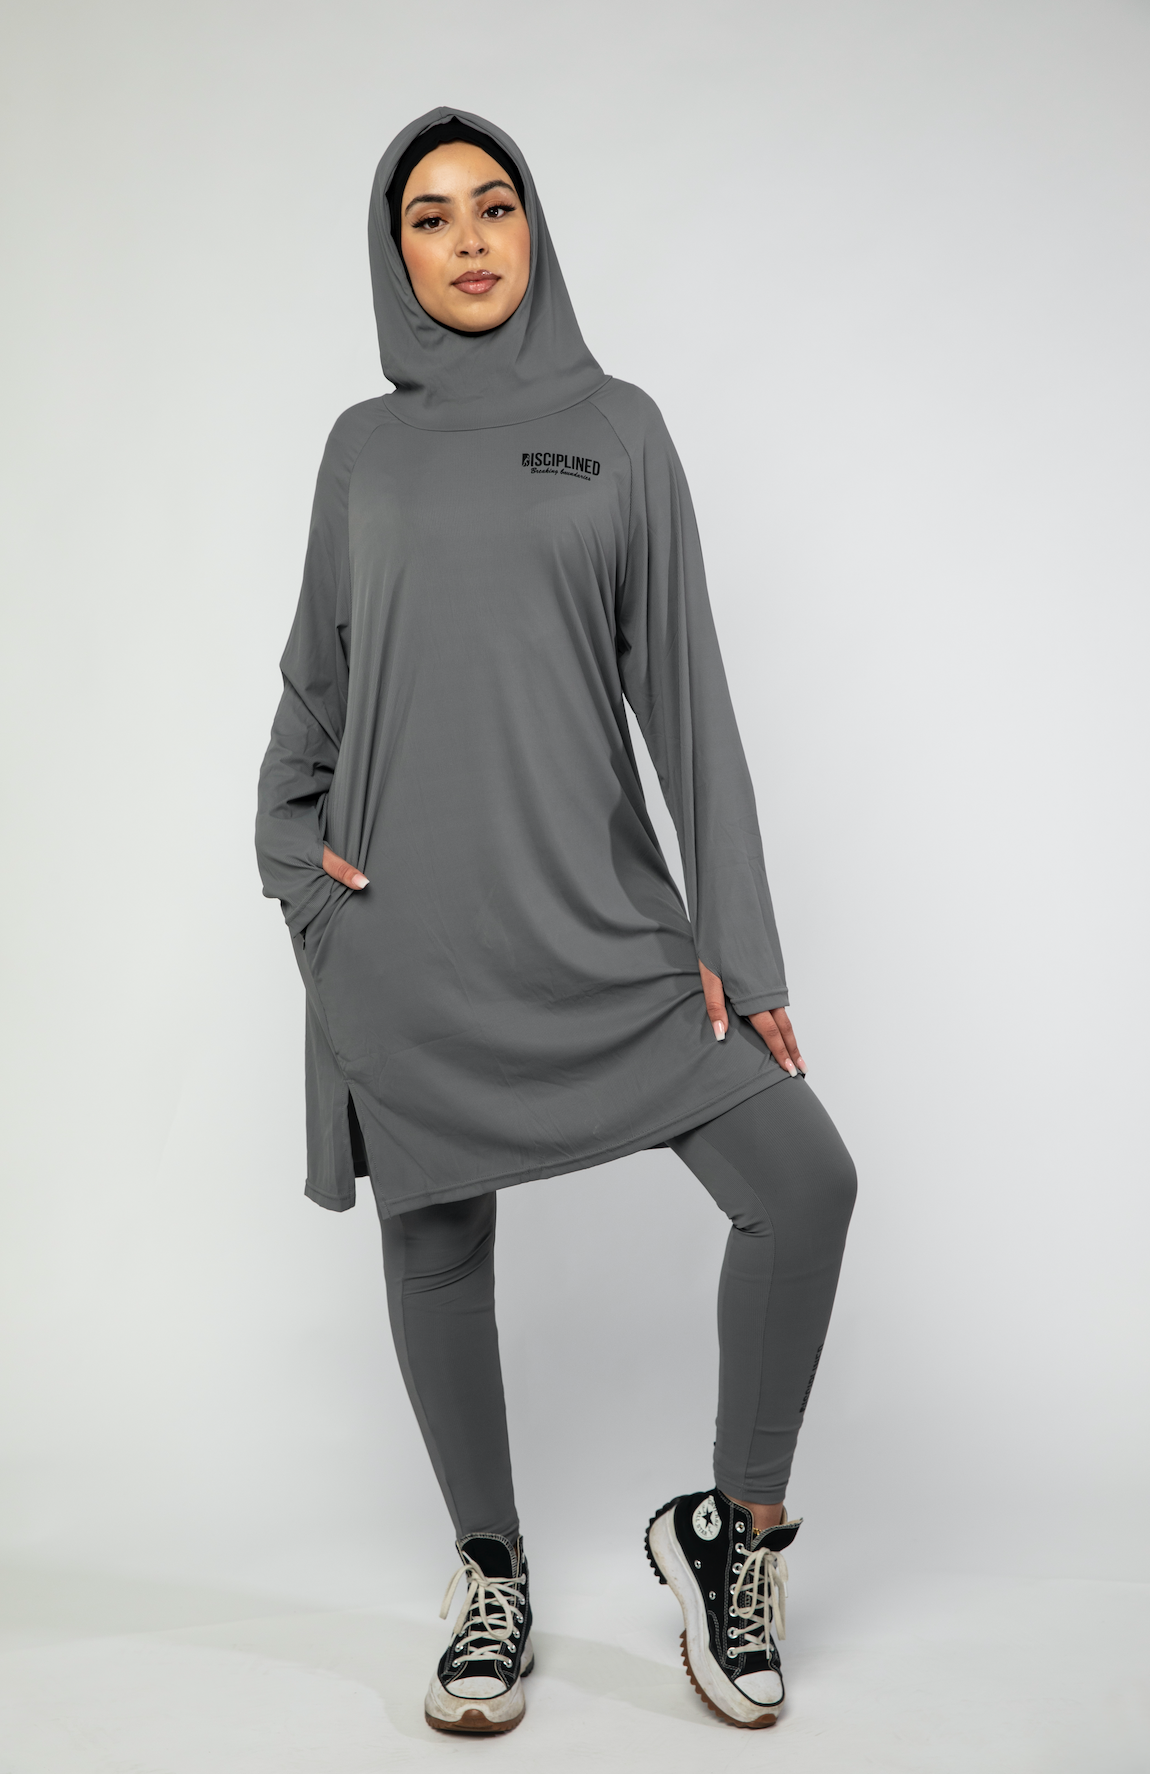 Veil Modest Activewear Kickstarter Campaign